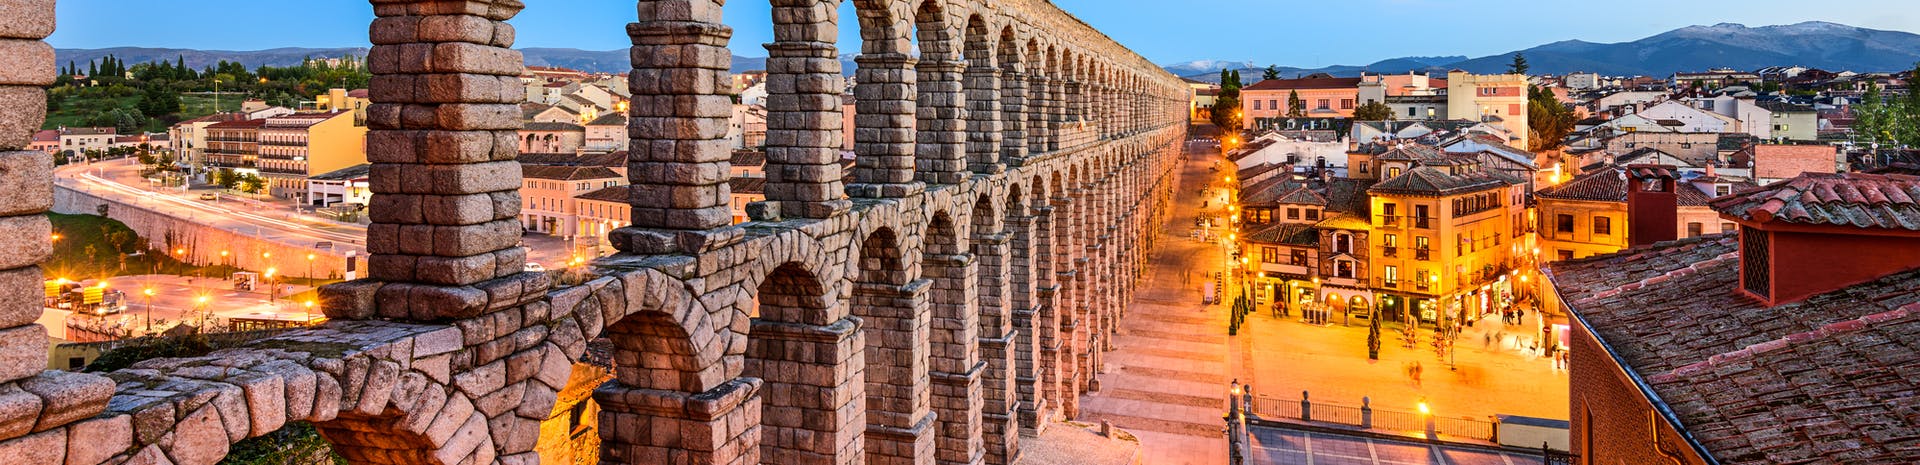 Picture of Segovia